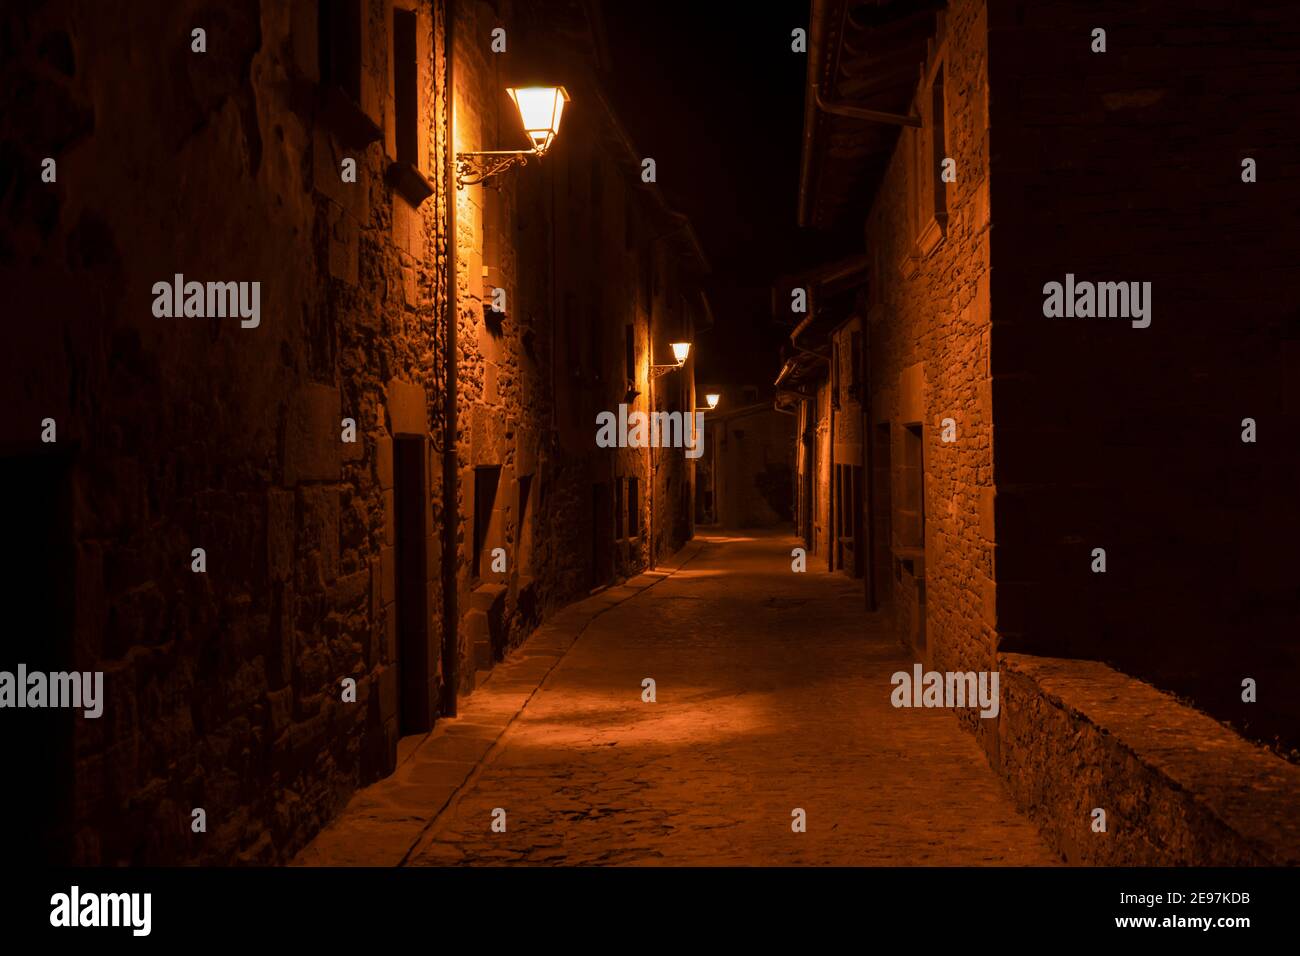 Erstaunliche Nachtansicht der alten Steinstraße mit Lampen Beleuchtung im alten mittelalterlichen Dorf Rupit, Barcelona, Spanien.Reisen in Europa Konzept, Coun Stockfoto